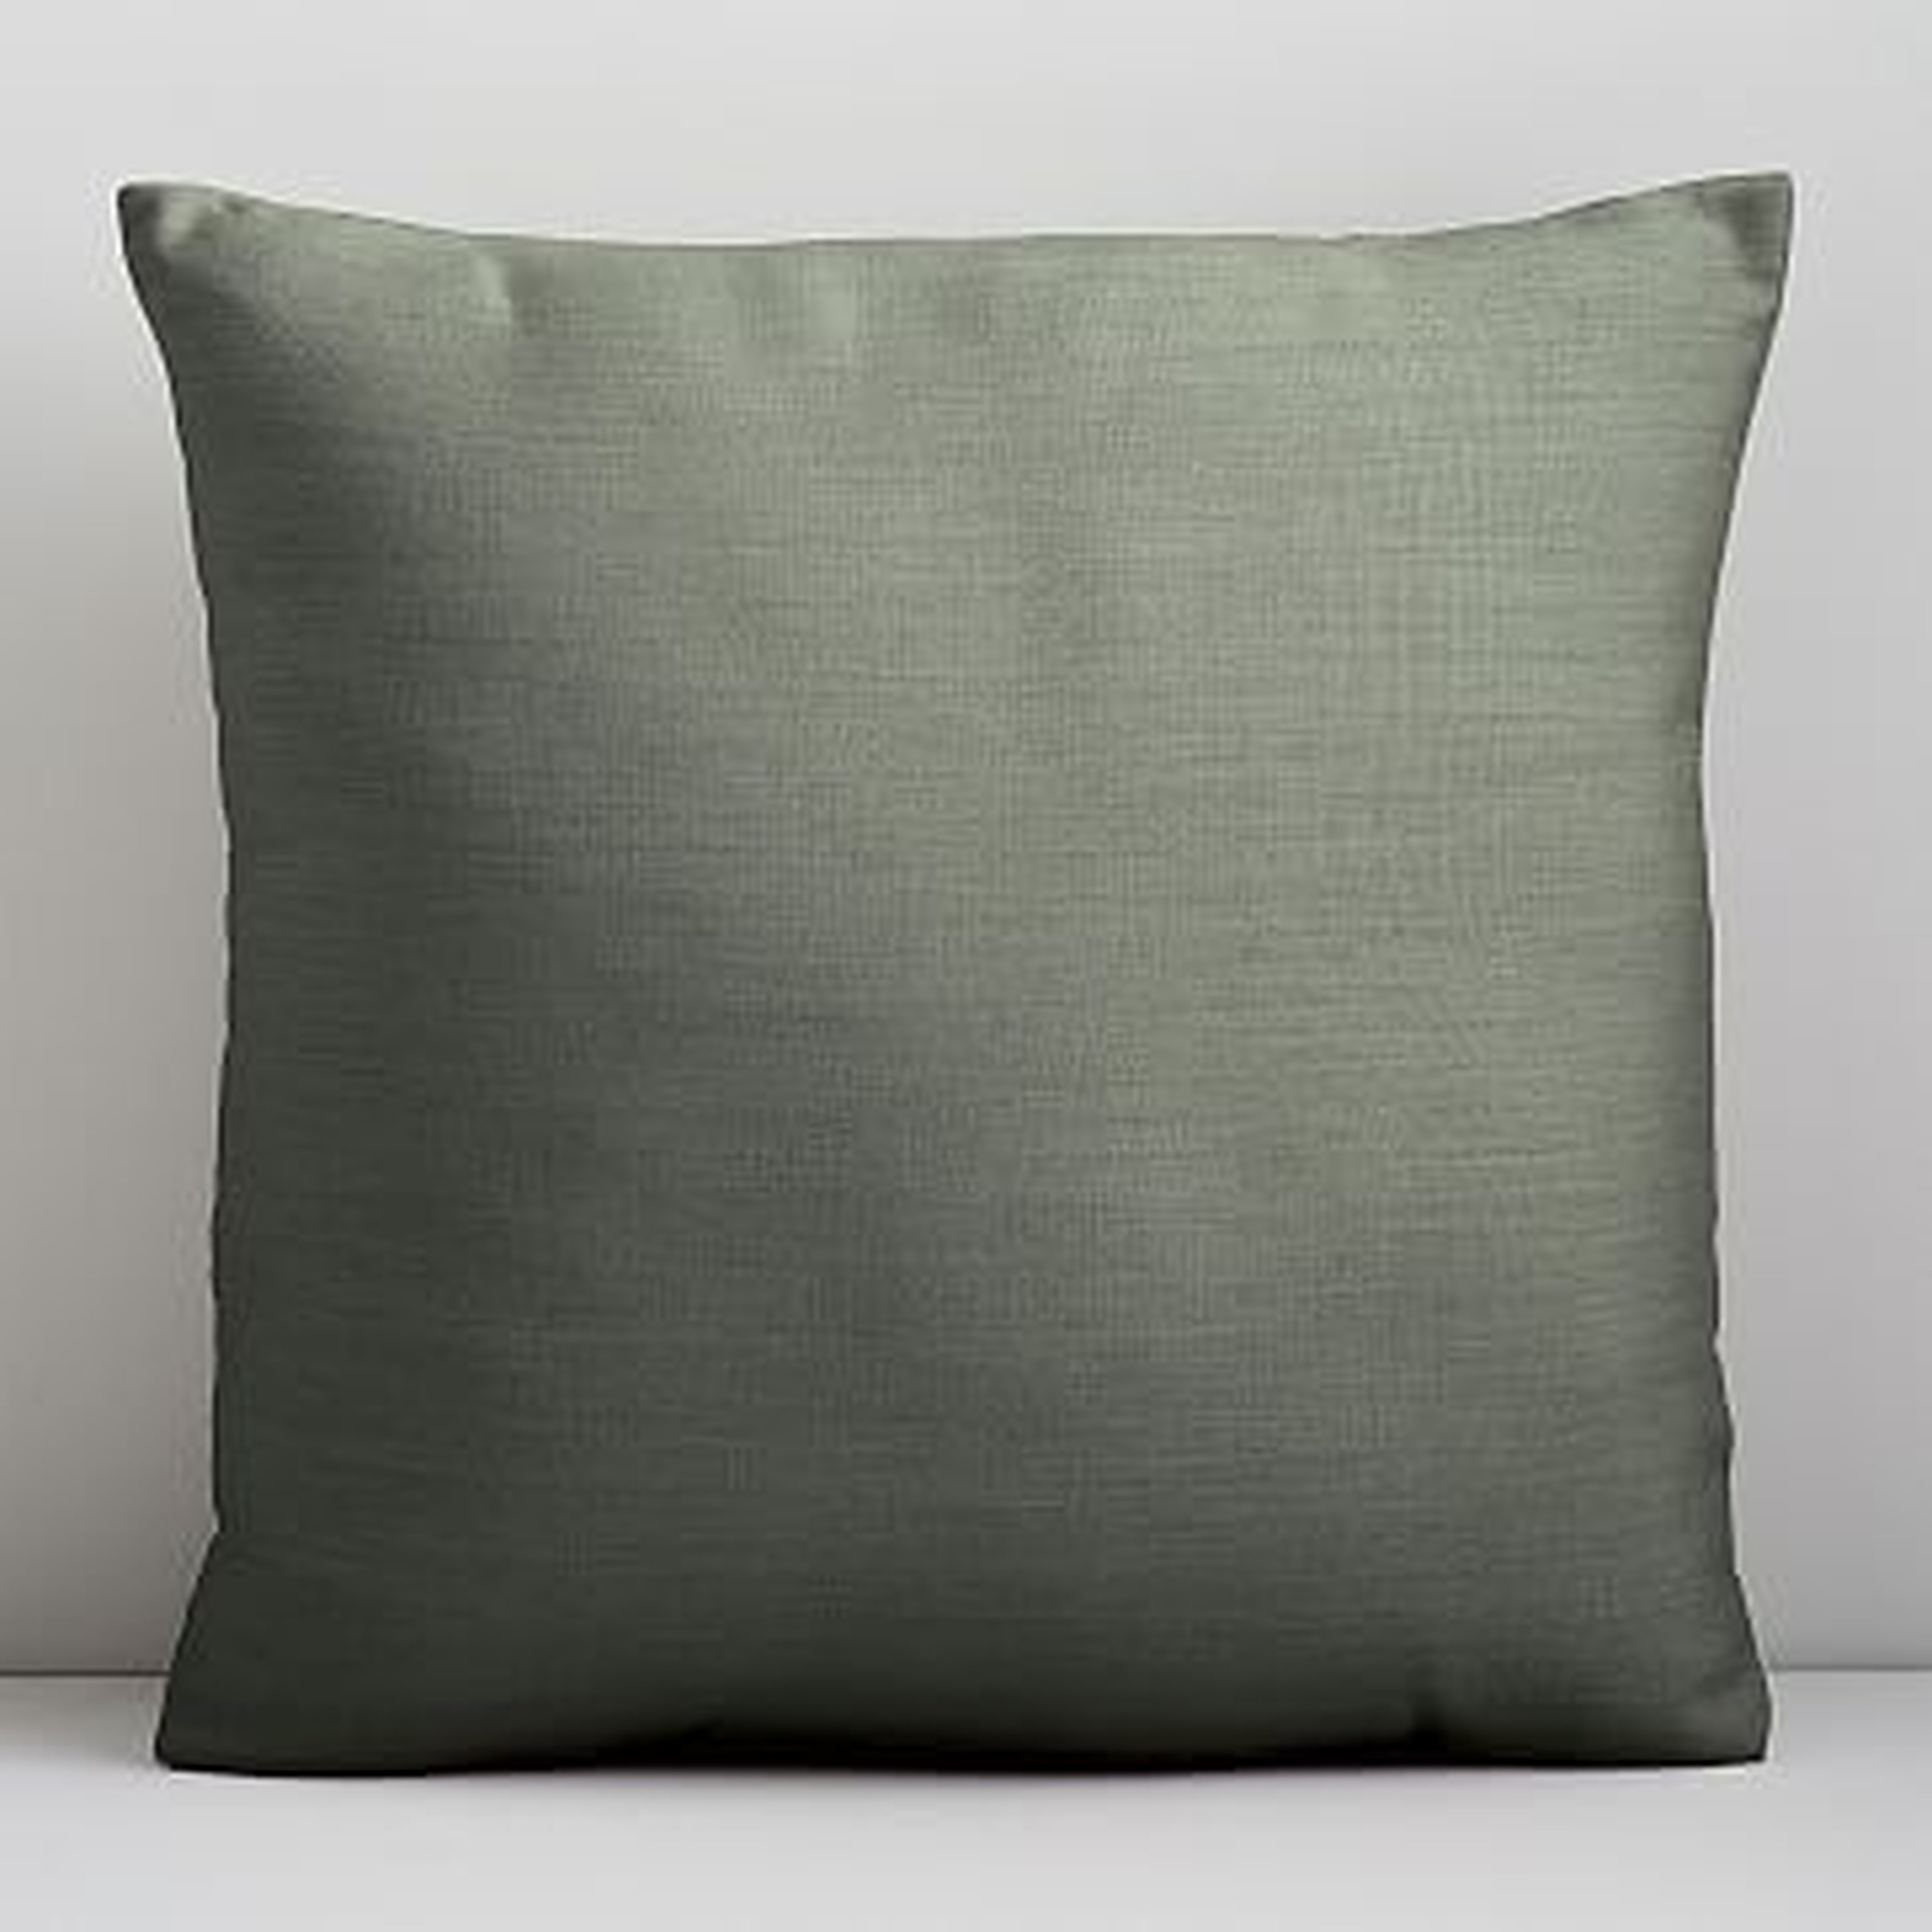 Sunbrella Indoor/Outdoor Cast Pillow, Set of 2, Sage, 18"x18" - West Elm